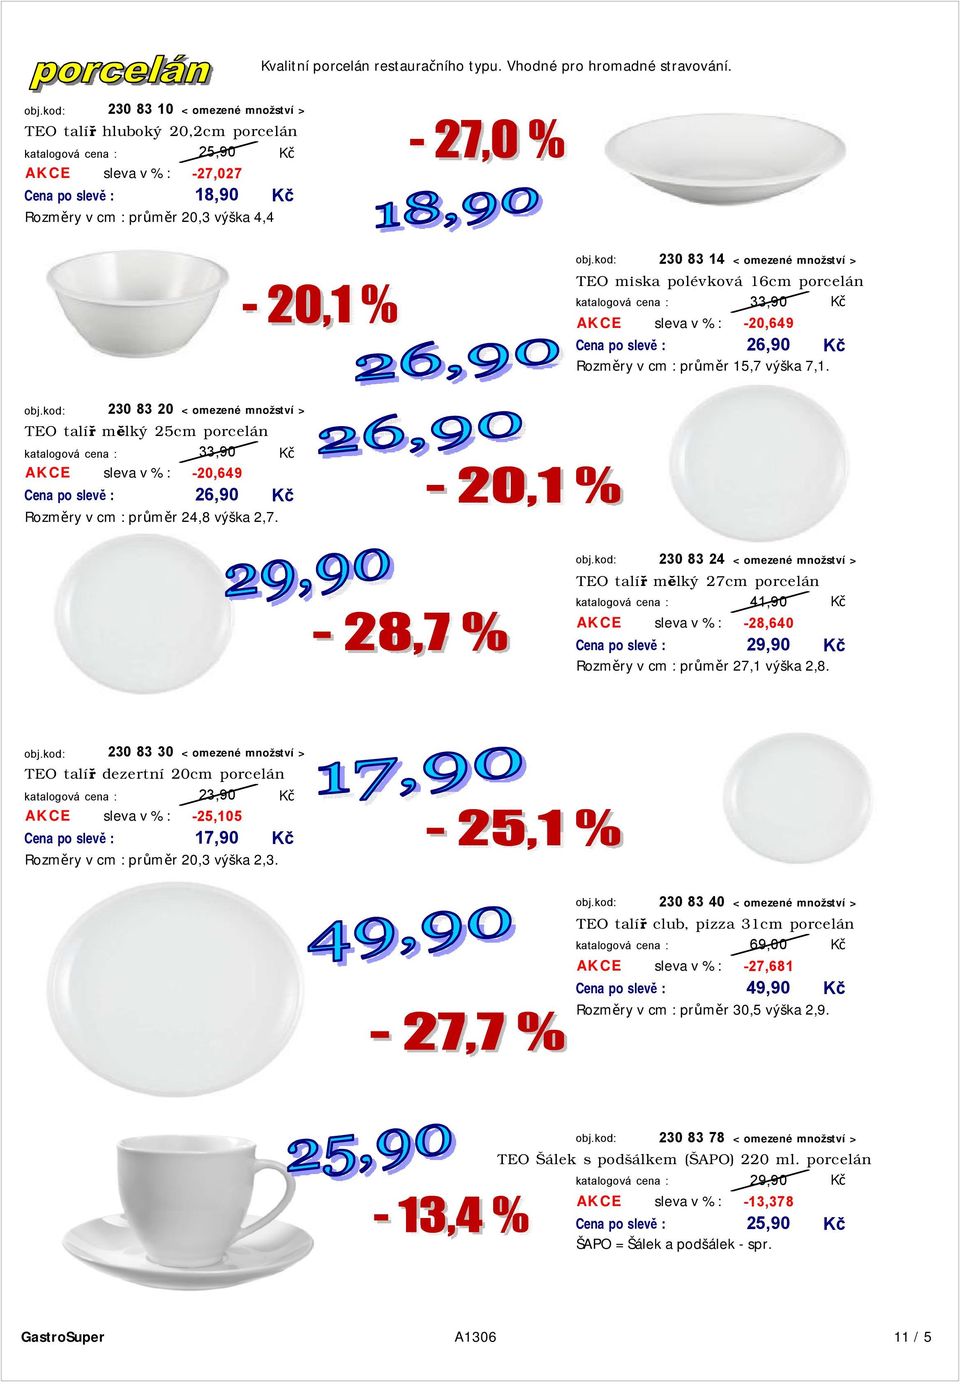 kod: 230 83 14 < omezené množství > TEO miska polévková 16cm porcelán 33,90 sleva v % : -20,649 Cena po slevě : 26,90 Rozměry v cm : průměr 15,7 výška 7,1. obj.